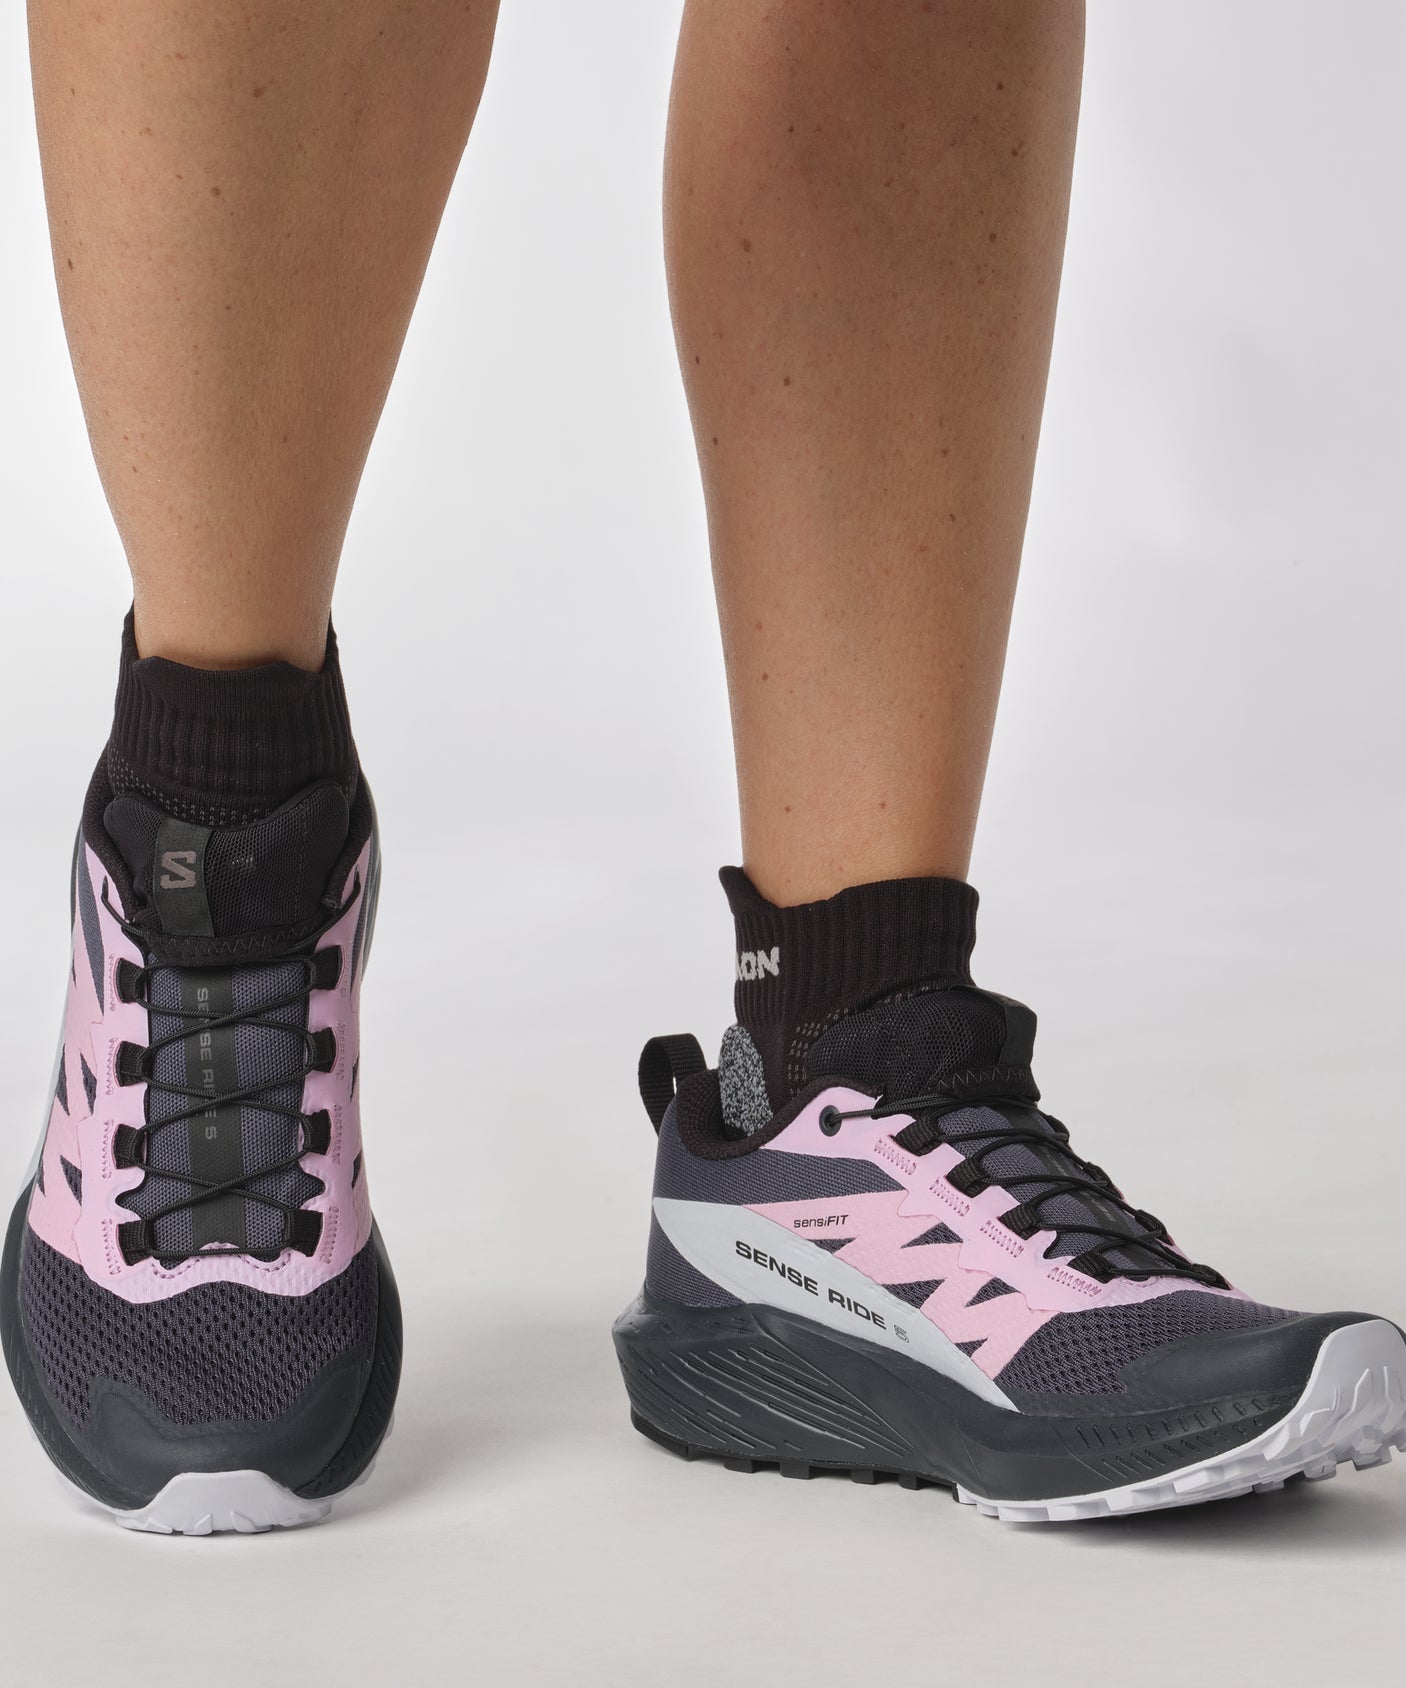 Salomon Women's Sense Ride 5 Trail Running Shoes, Black/Pink